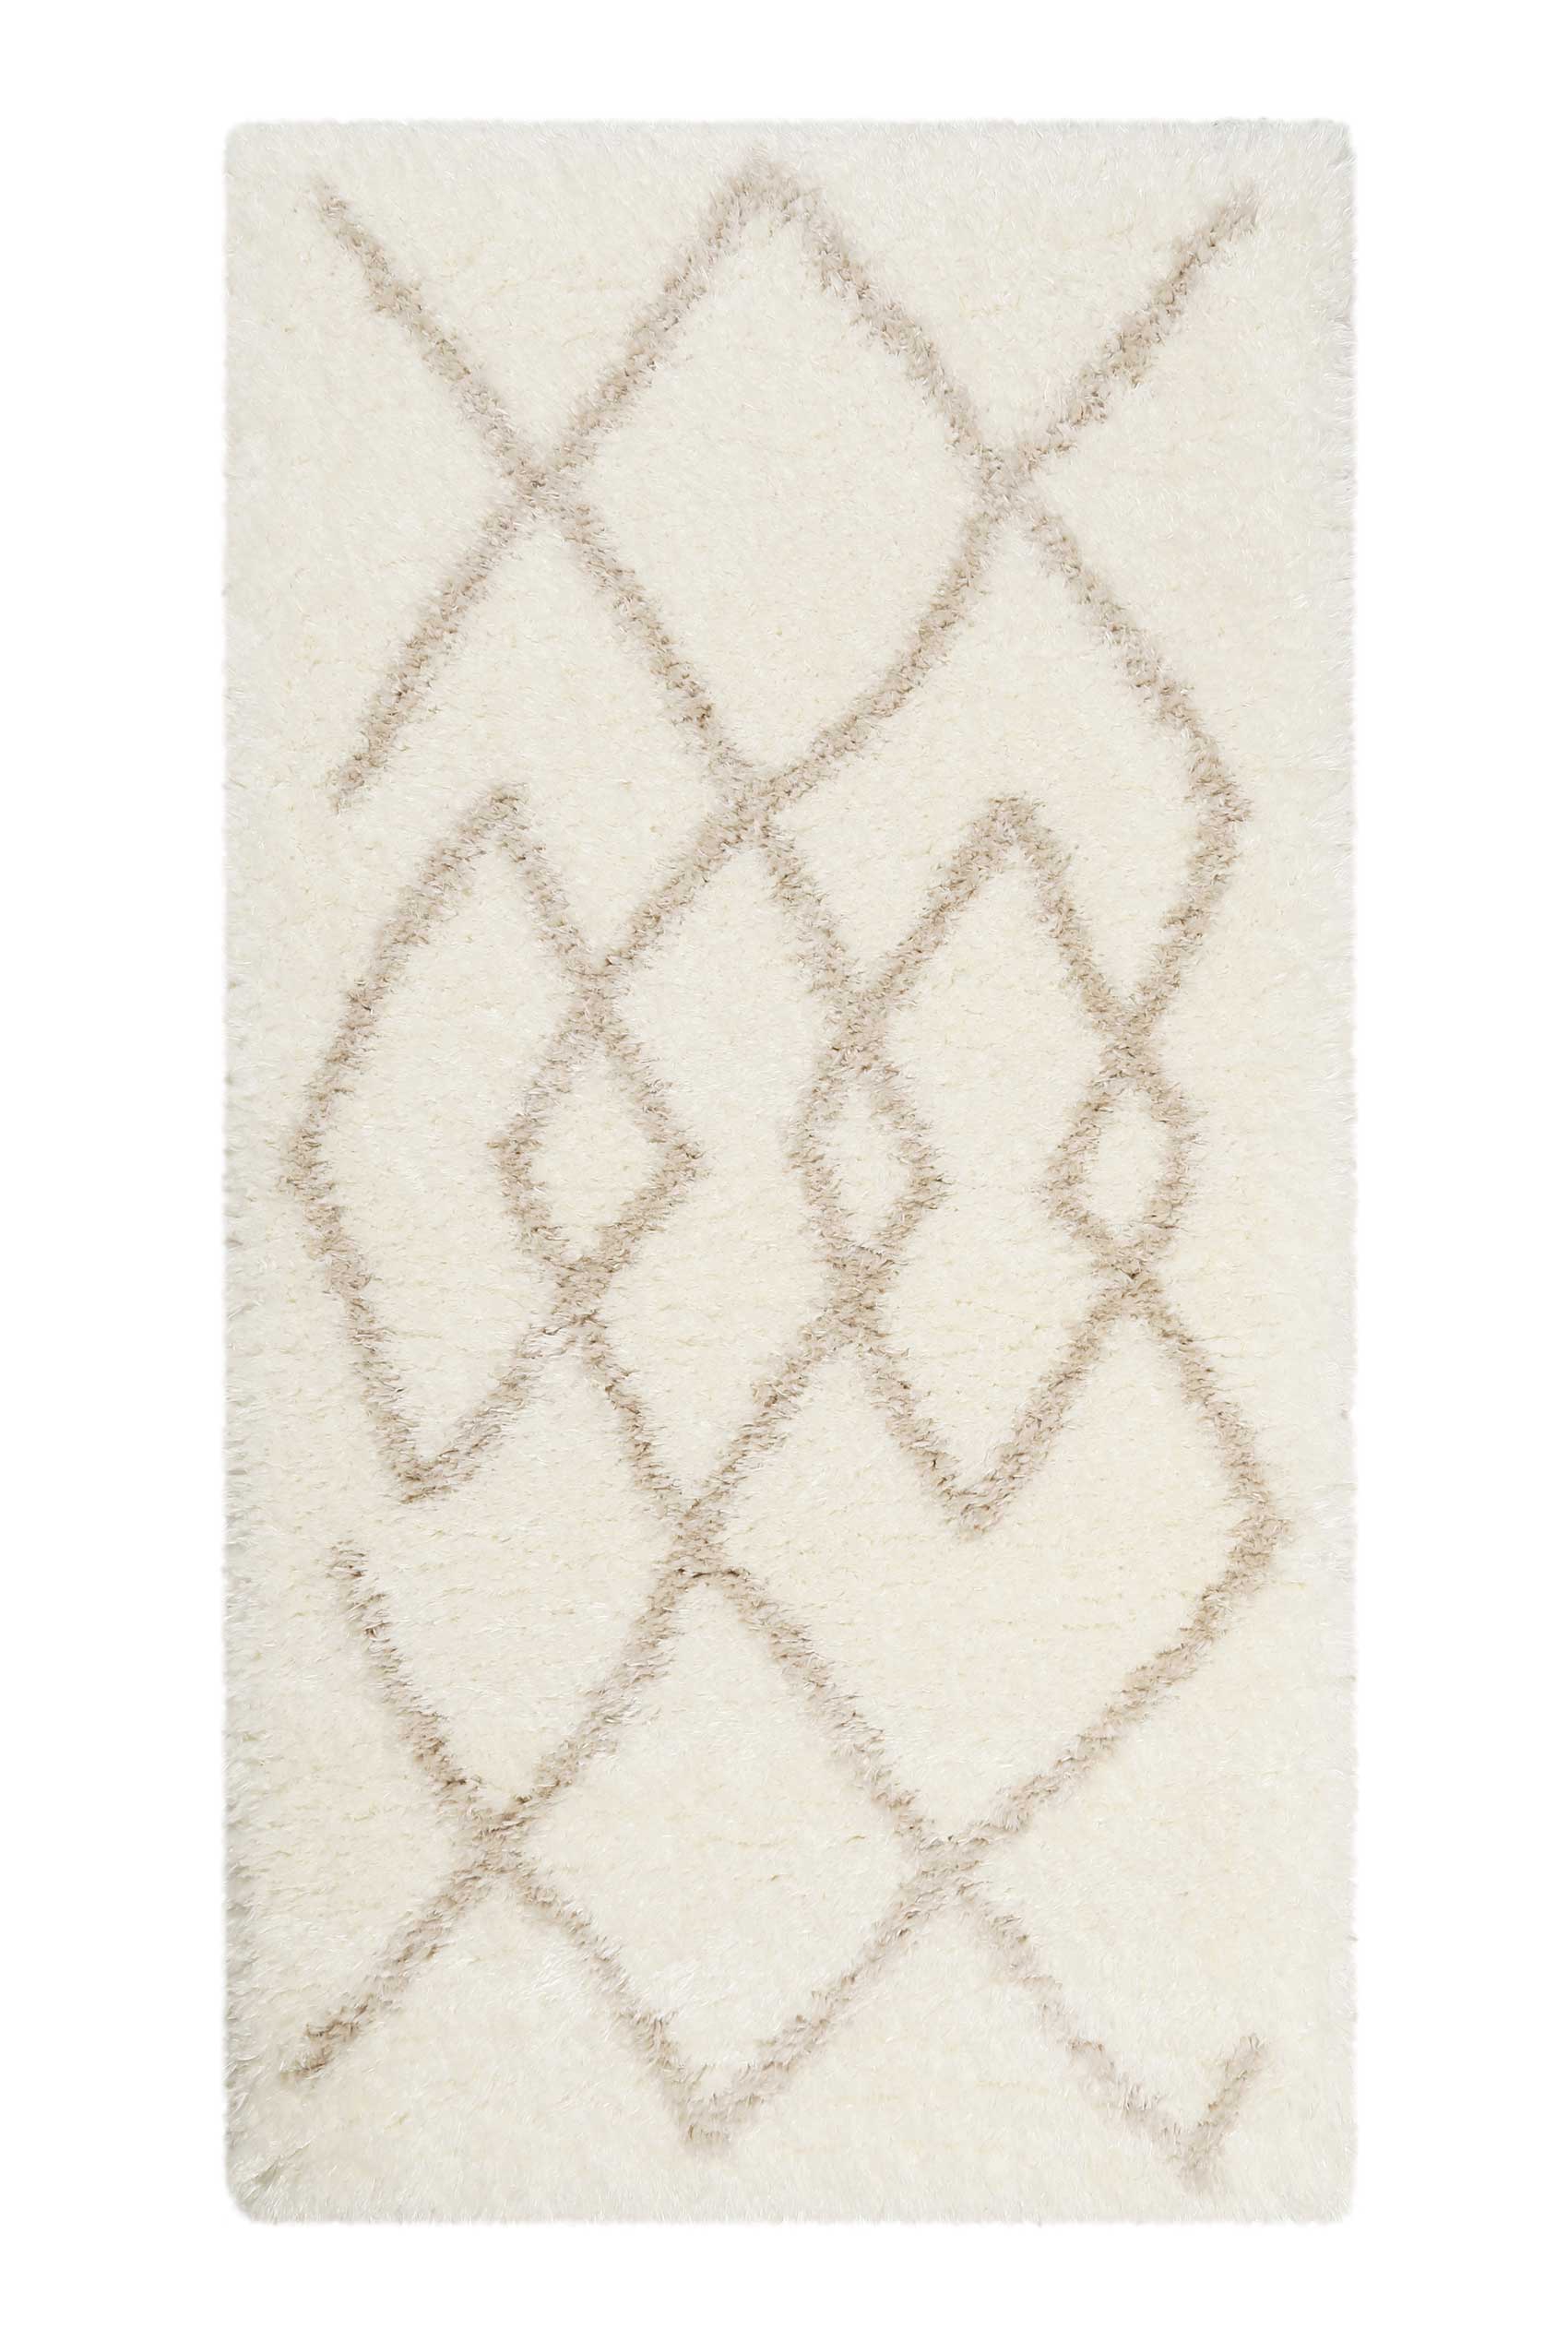 Teppich Creme Weiß Beige sehr flauschig & kuschelig » Afella « WECONhome - Ansicht 7